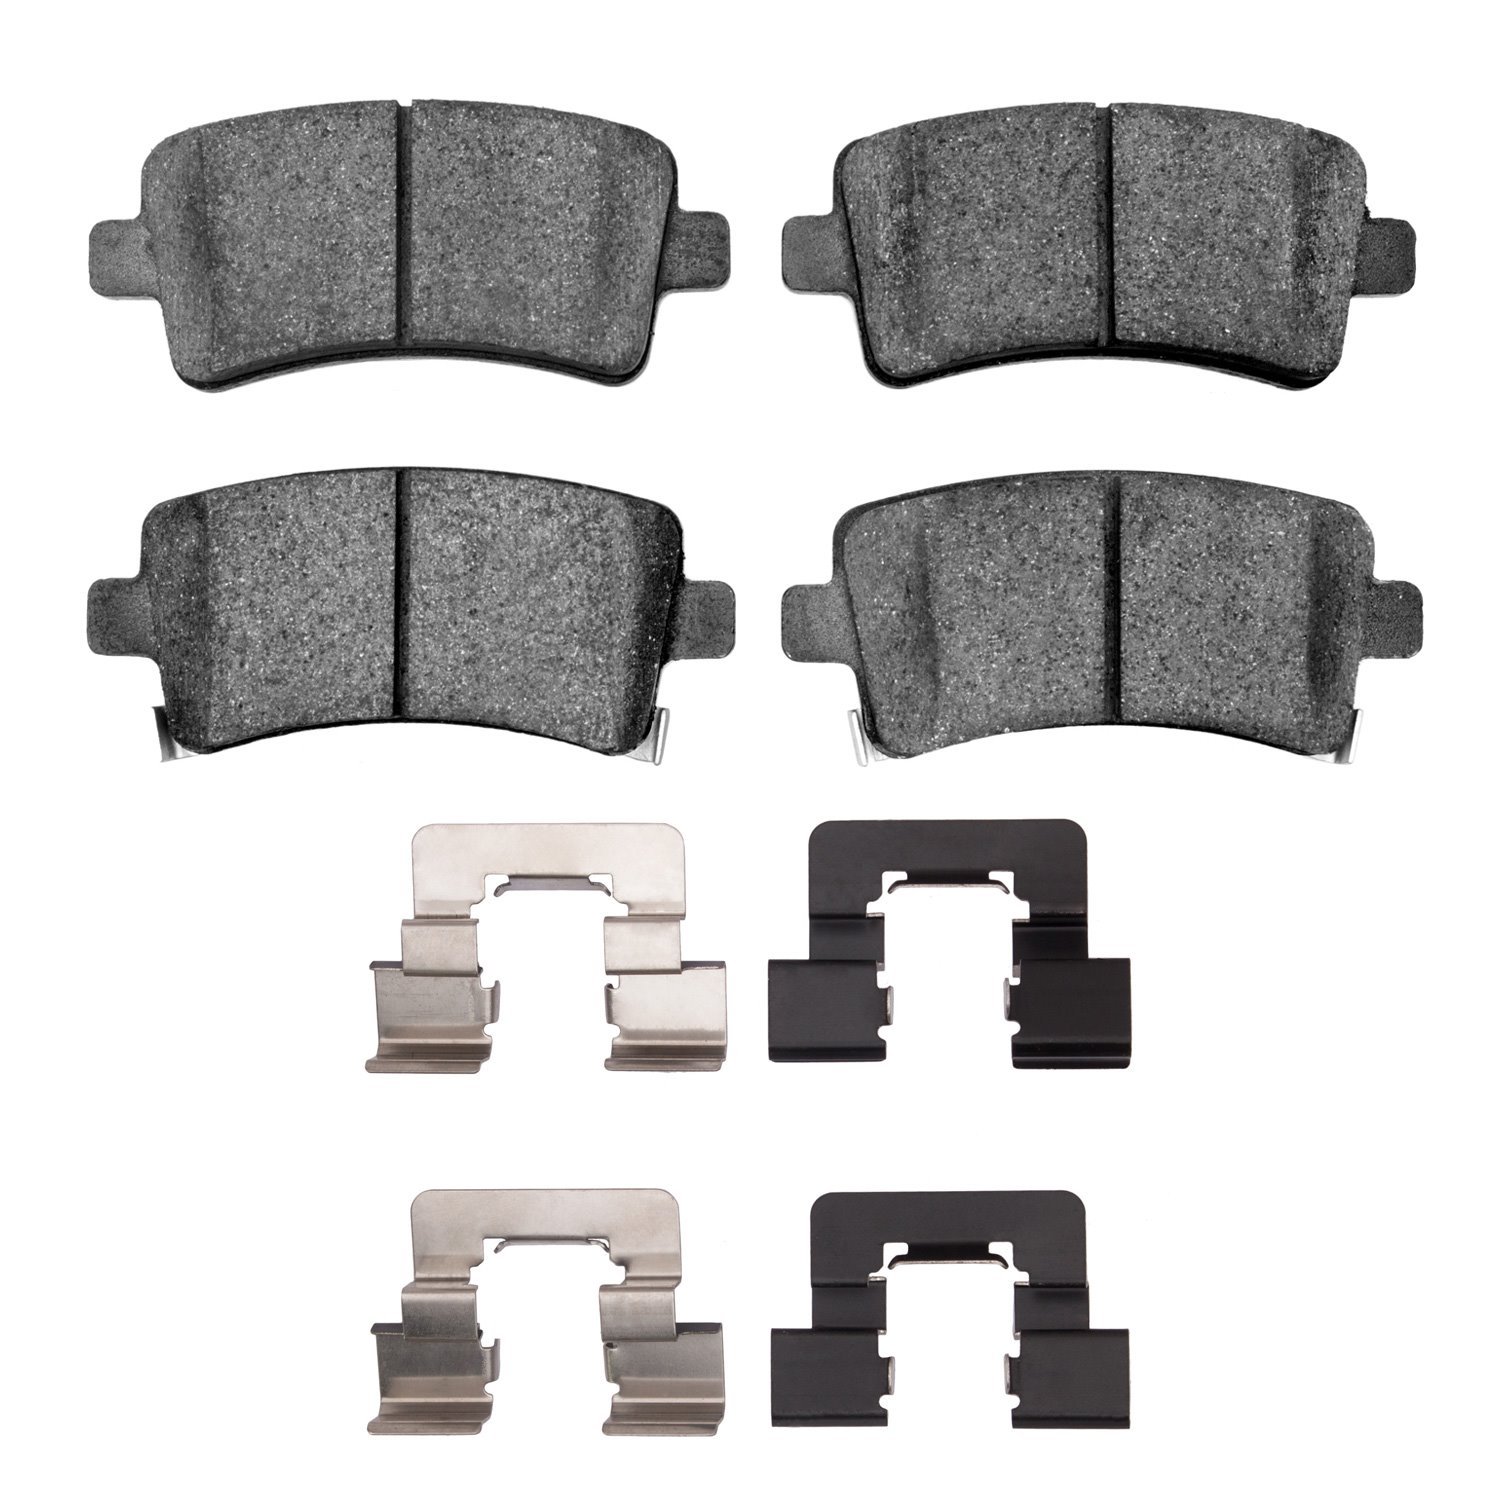 1310-1430-02 3000-Series Ceramic Brake Pads & Hardware Kit, 2011-2016 GM, Position: Rear